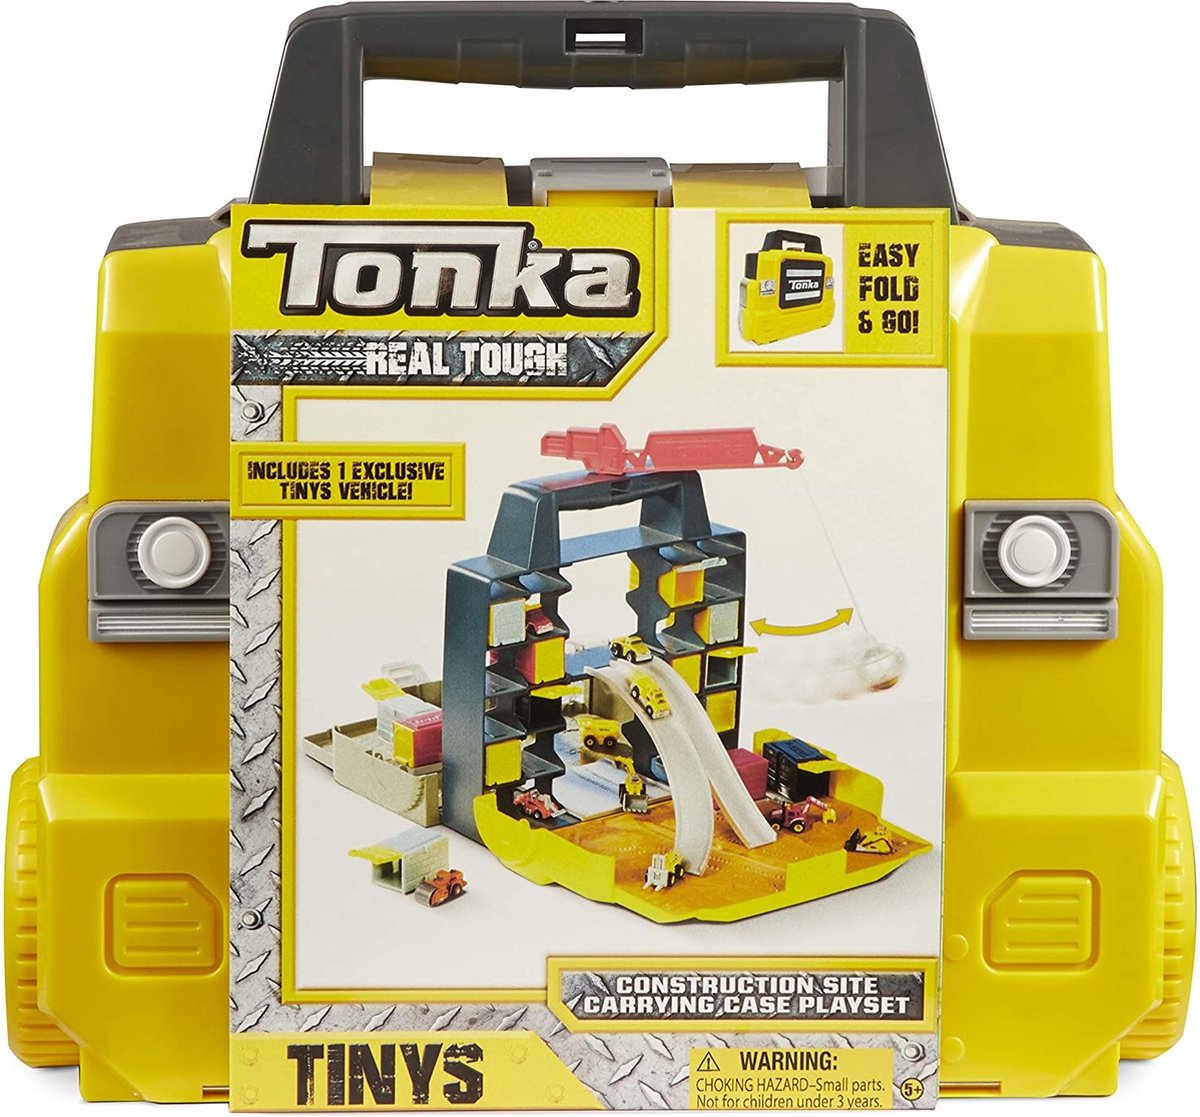 Convergeren Beg moeilijk Tonka speelkoffer met auto | bol.com